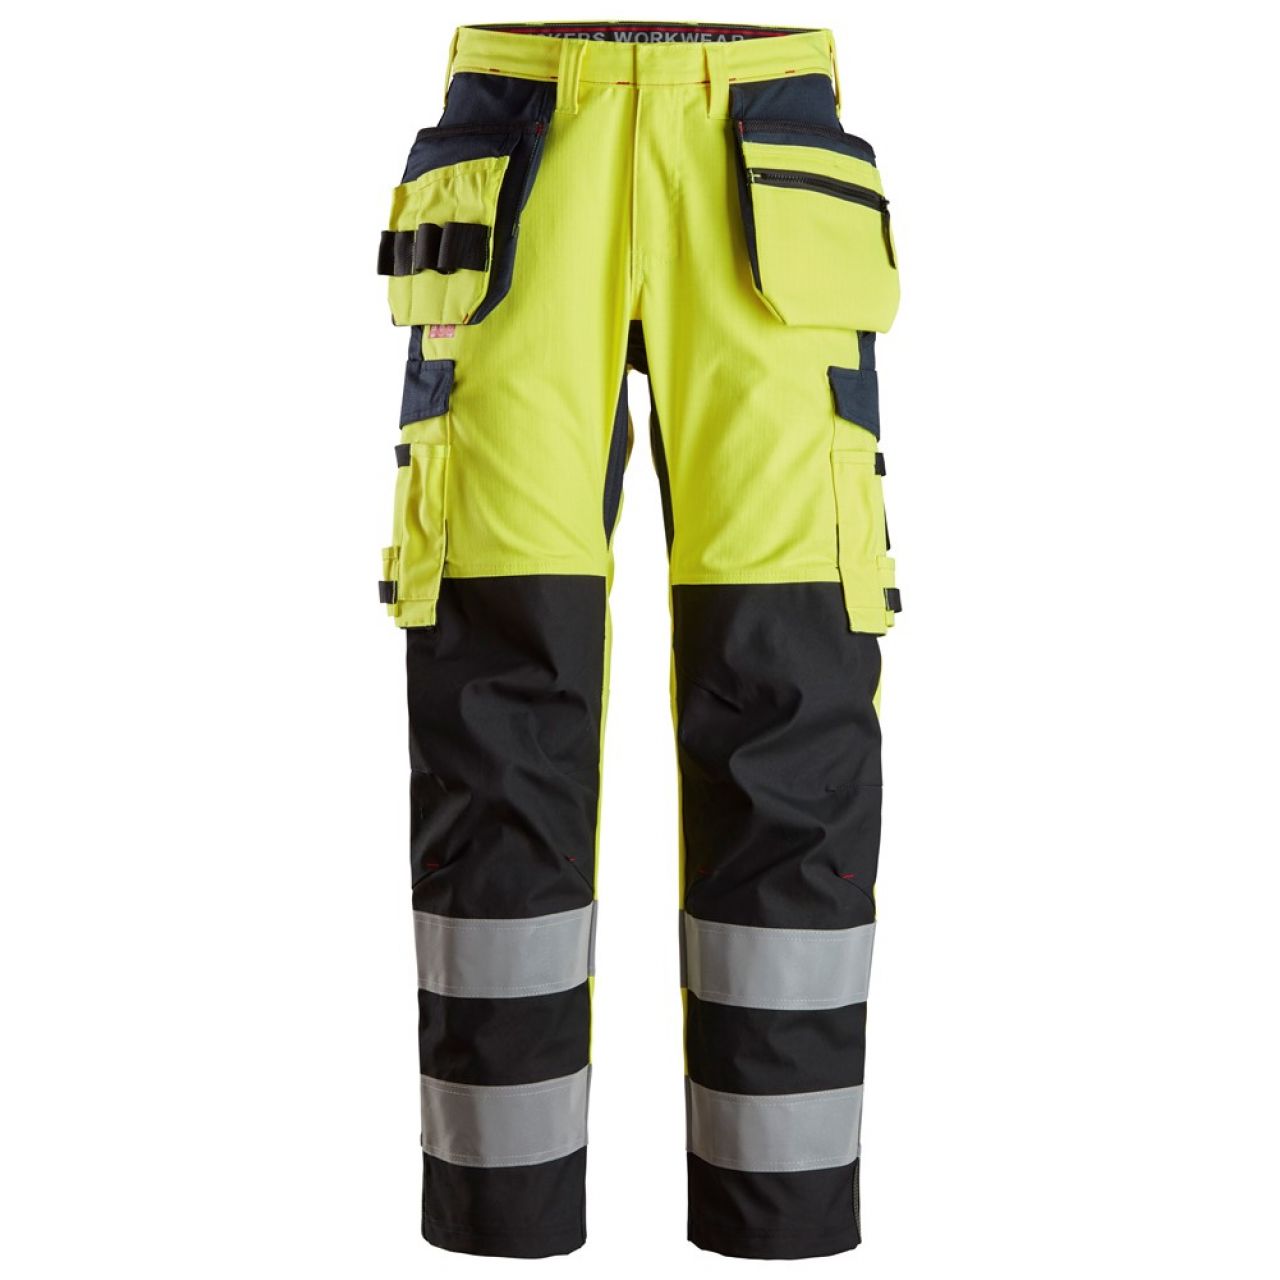 6264 Pantalones largos de trabajo de alta visibilidad clase 2 con bolsillos flotantes y espinilla reforzada ProtecWork amarillo-azul marino talla 148